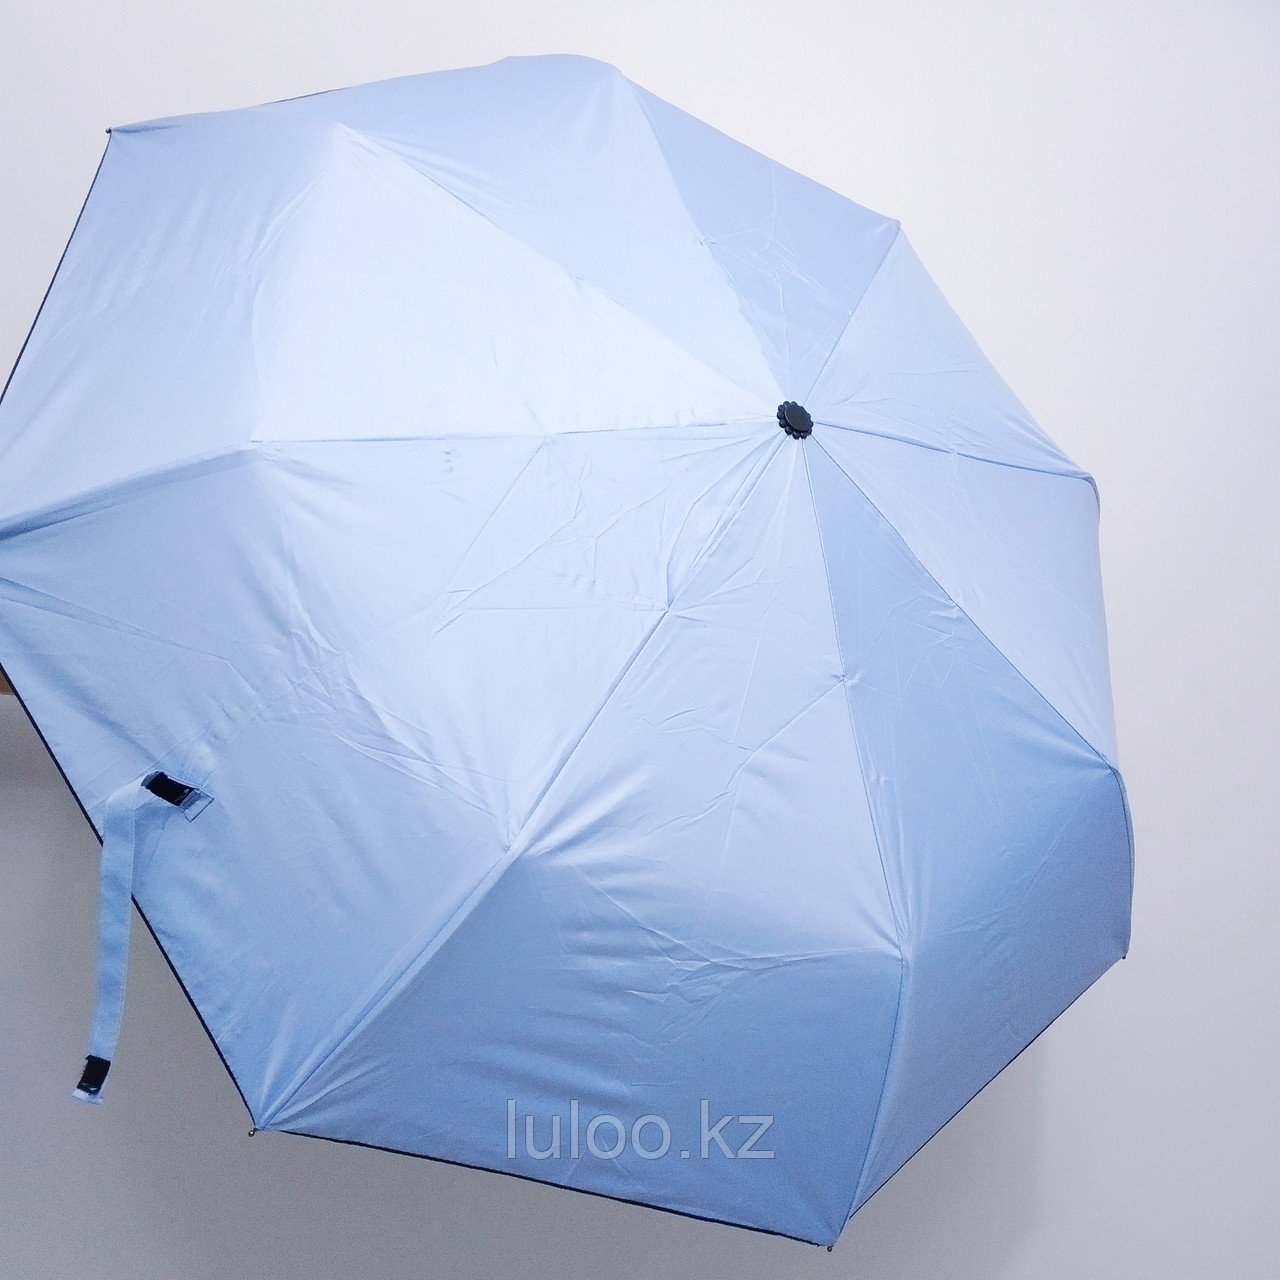 Складной универсальный: от дождя и солнца. Женский зонт, голубой., фото 1